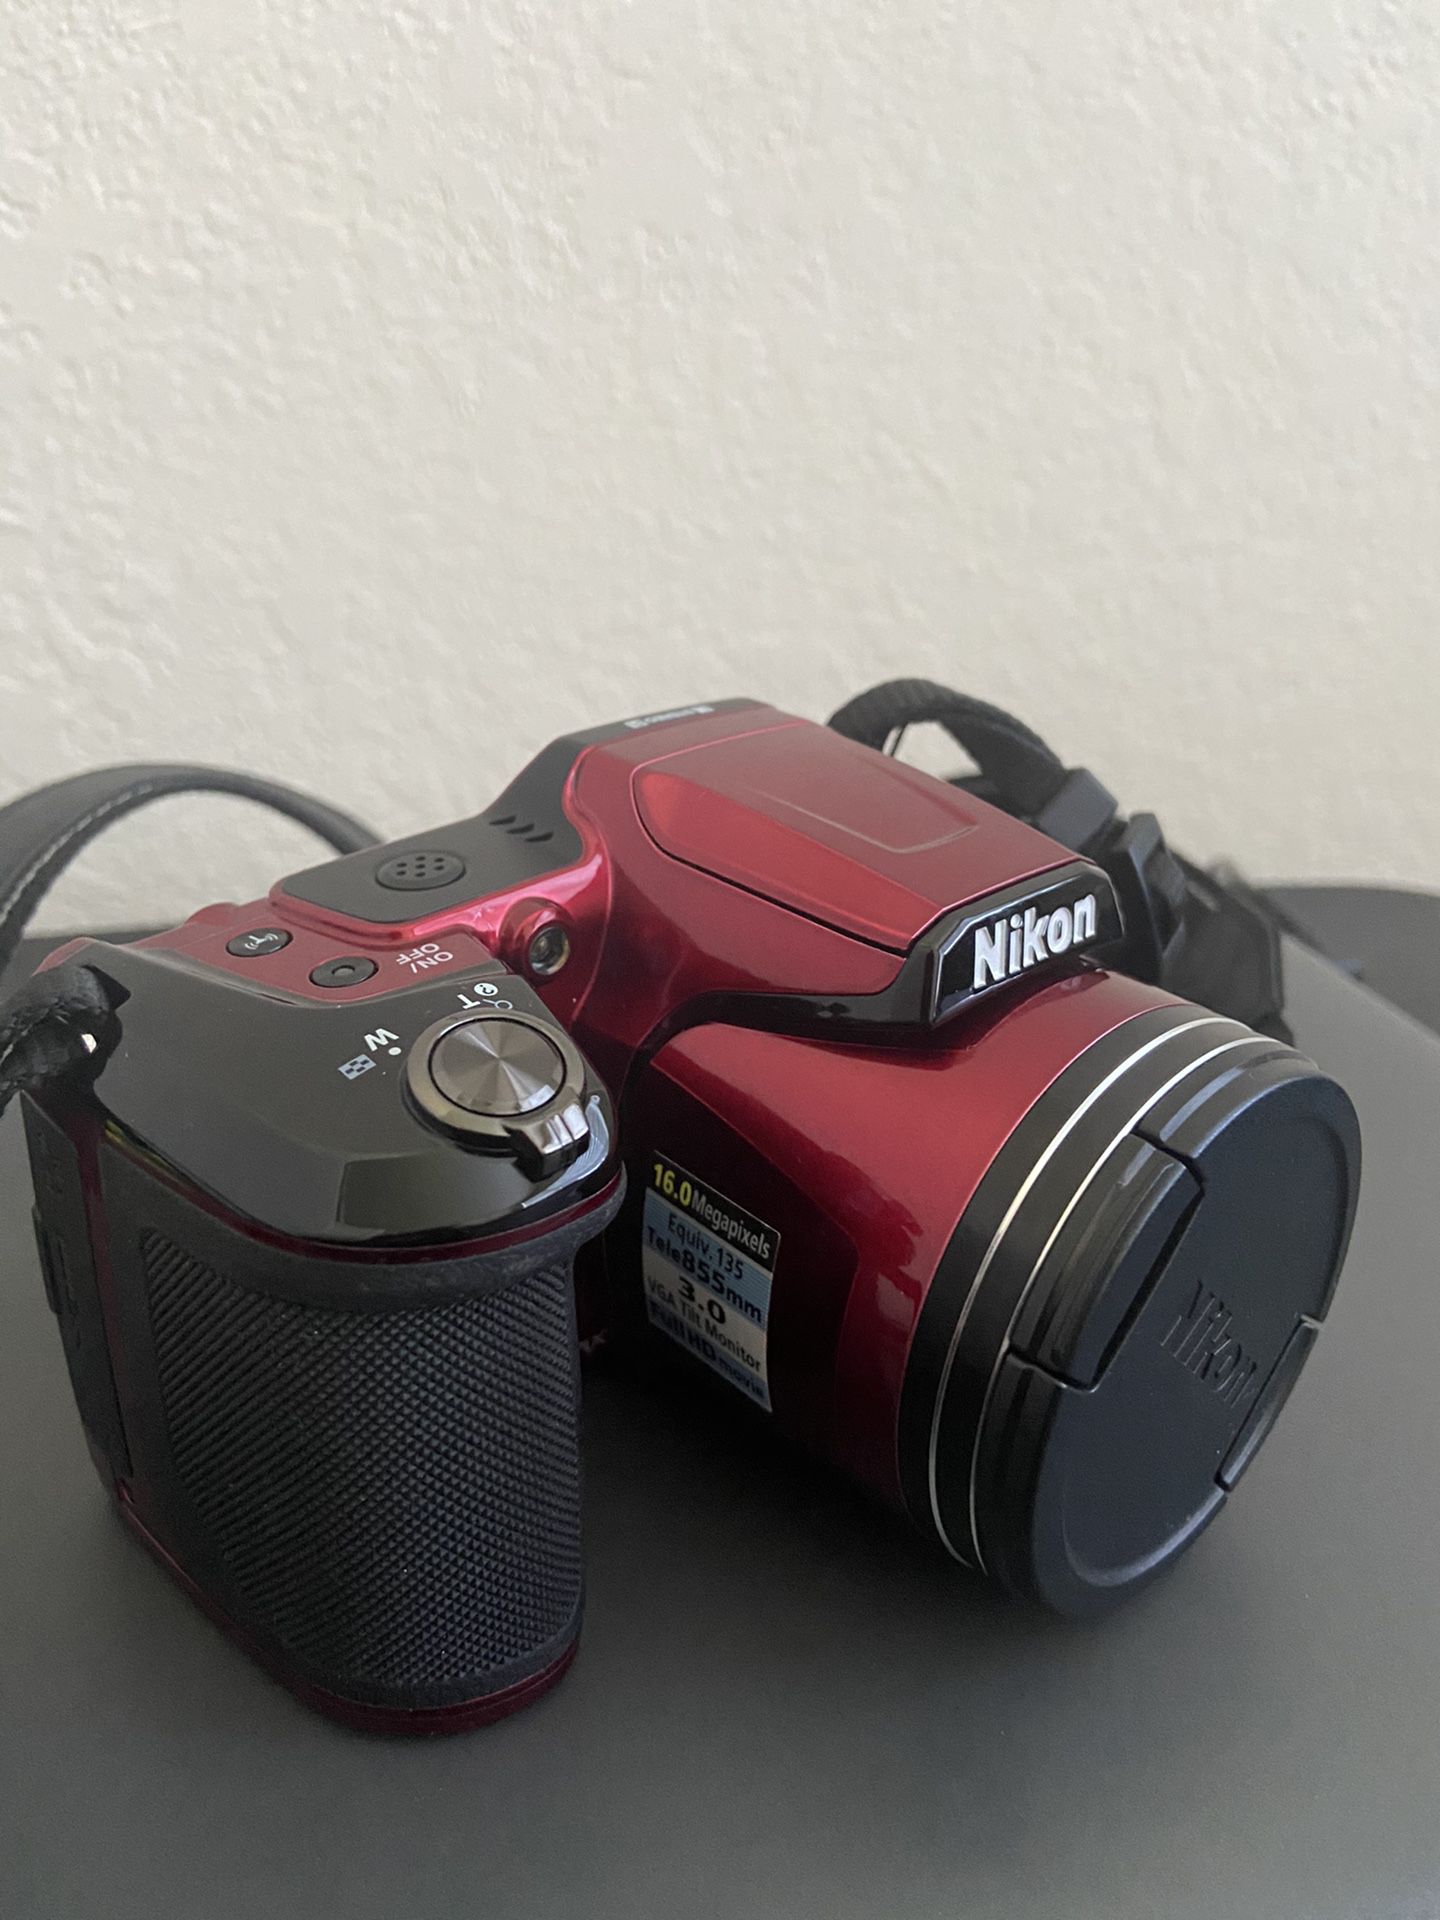 Nikon Digital Camera with case